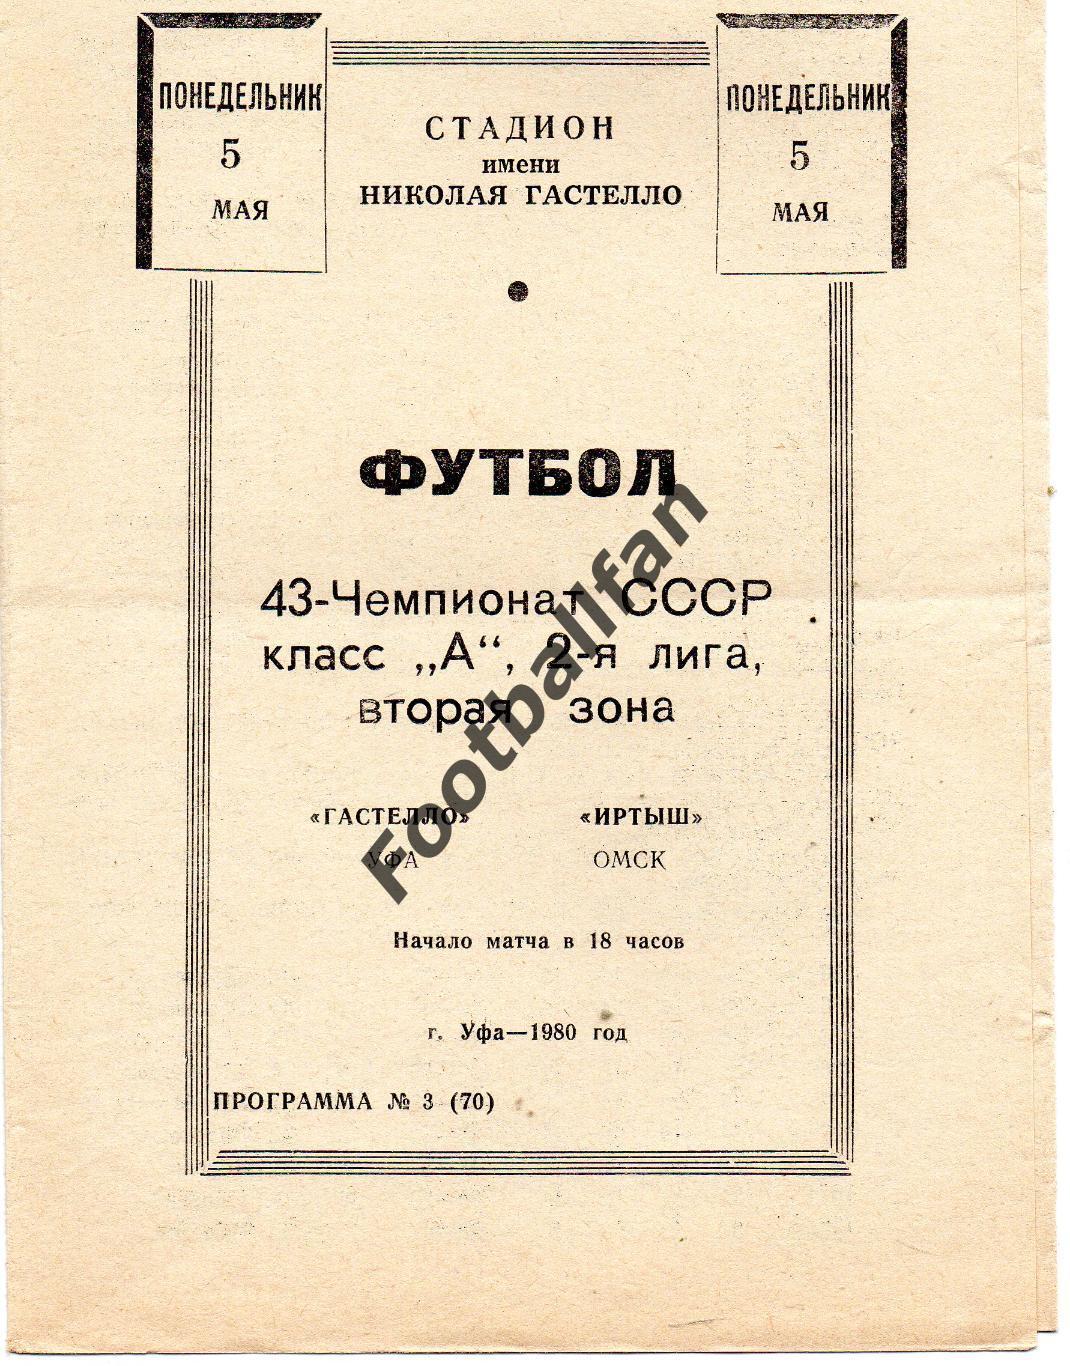 СК имени Н.Гастелло Уфа - Иртыш Омск 05.05.1980